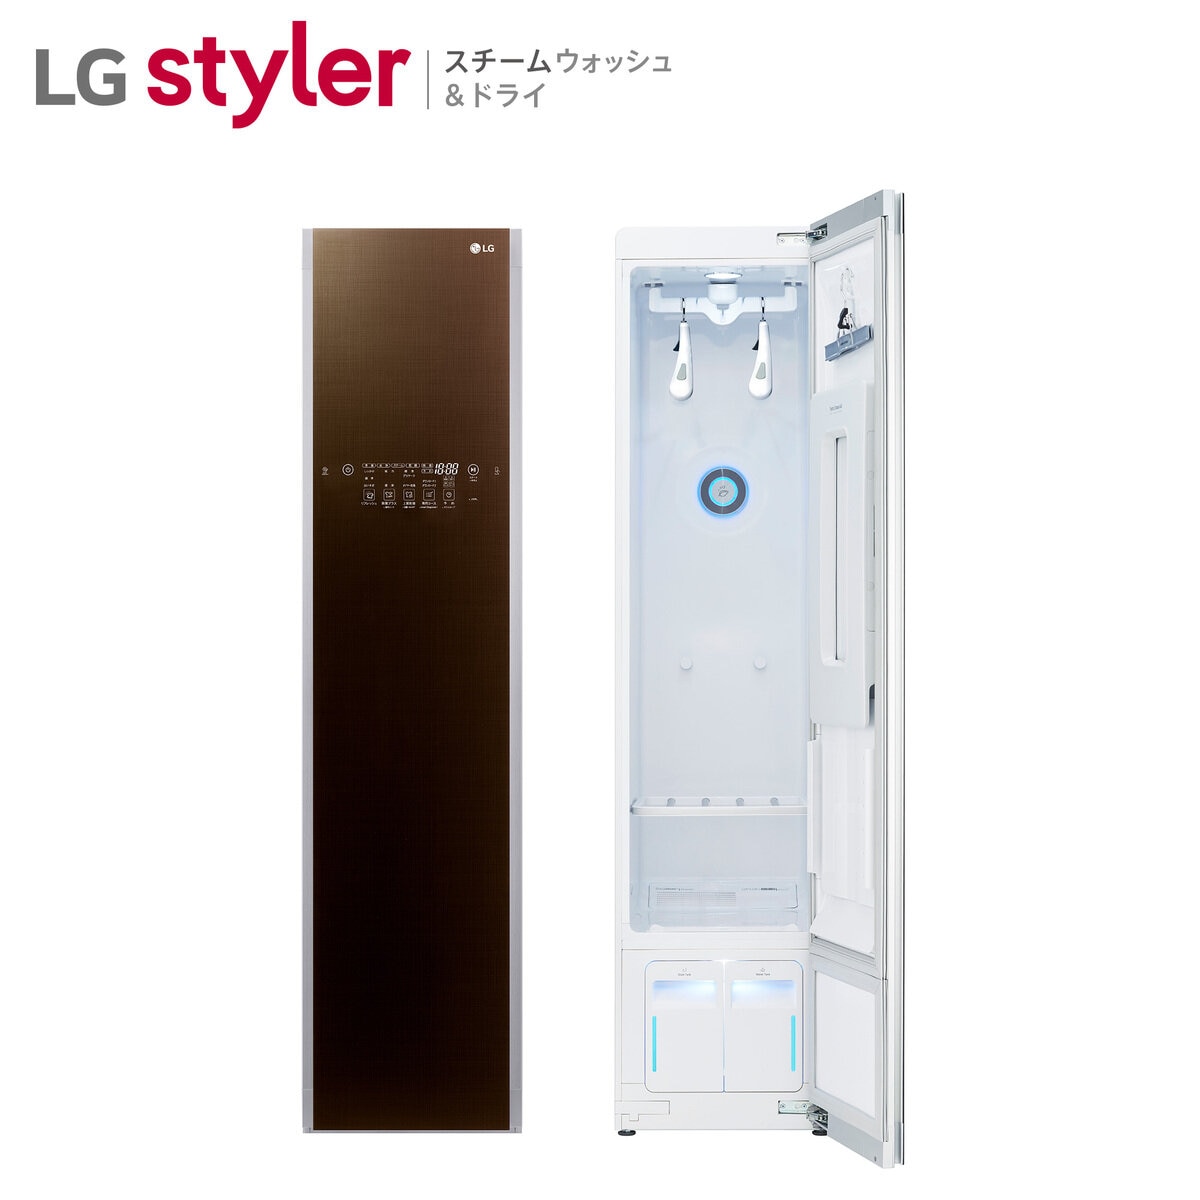 LG スタイラー スチームクローゼット ブラウン S3RERB | Costco Japan